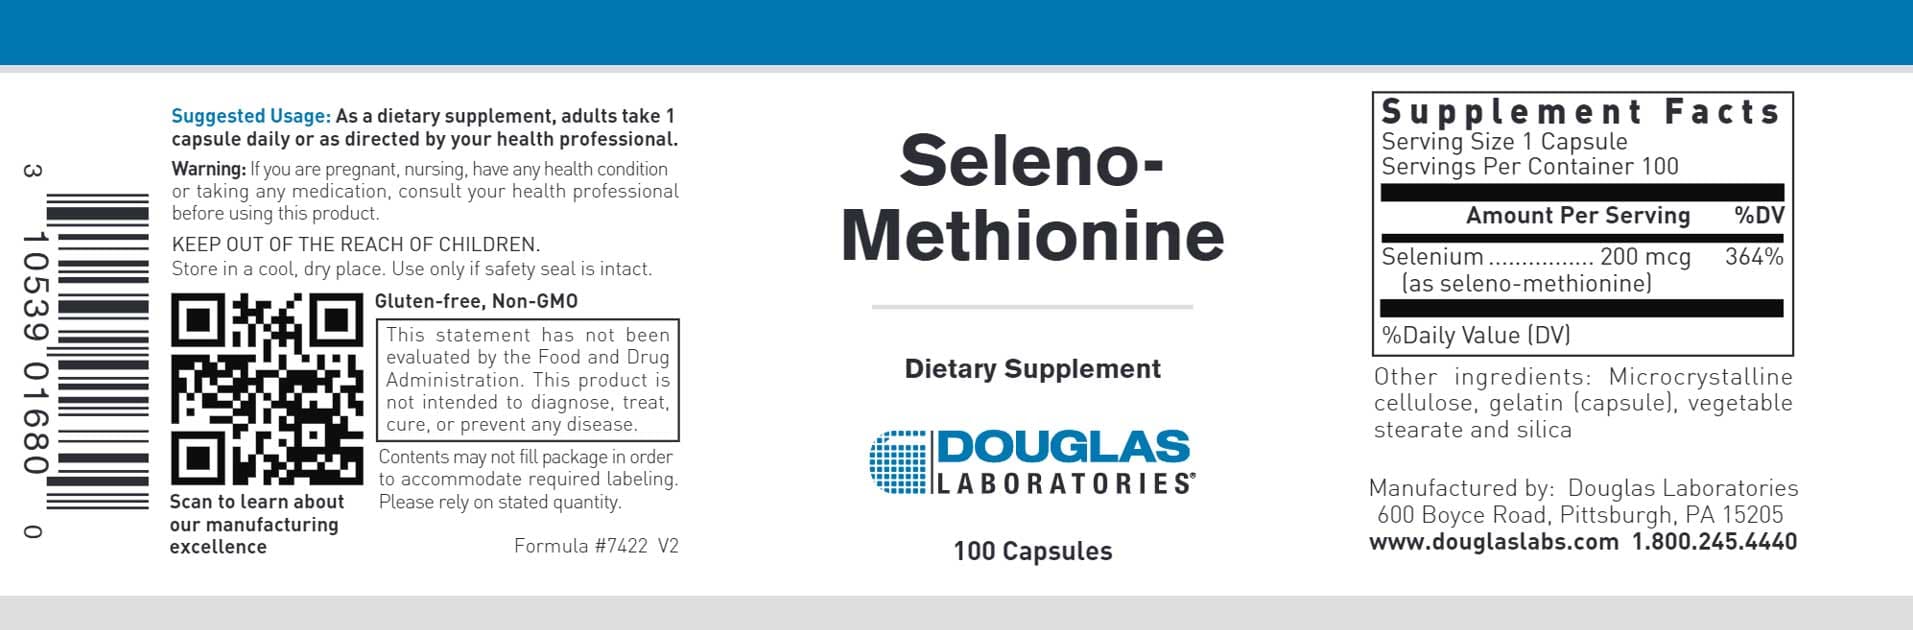 Douglas Laboratories Seleno-Methionine